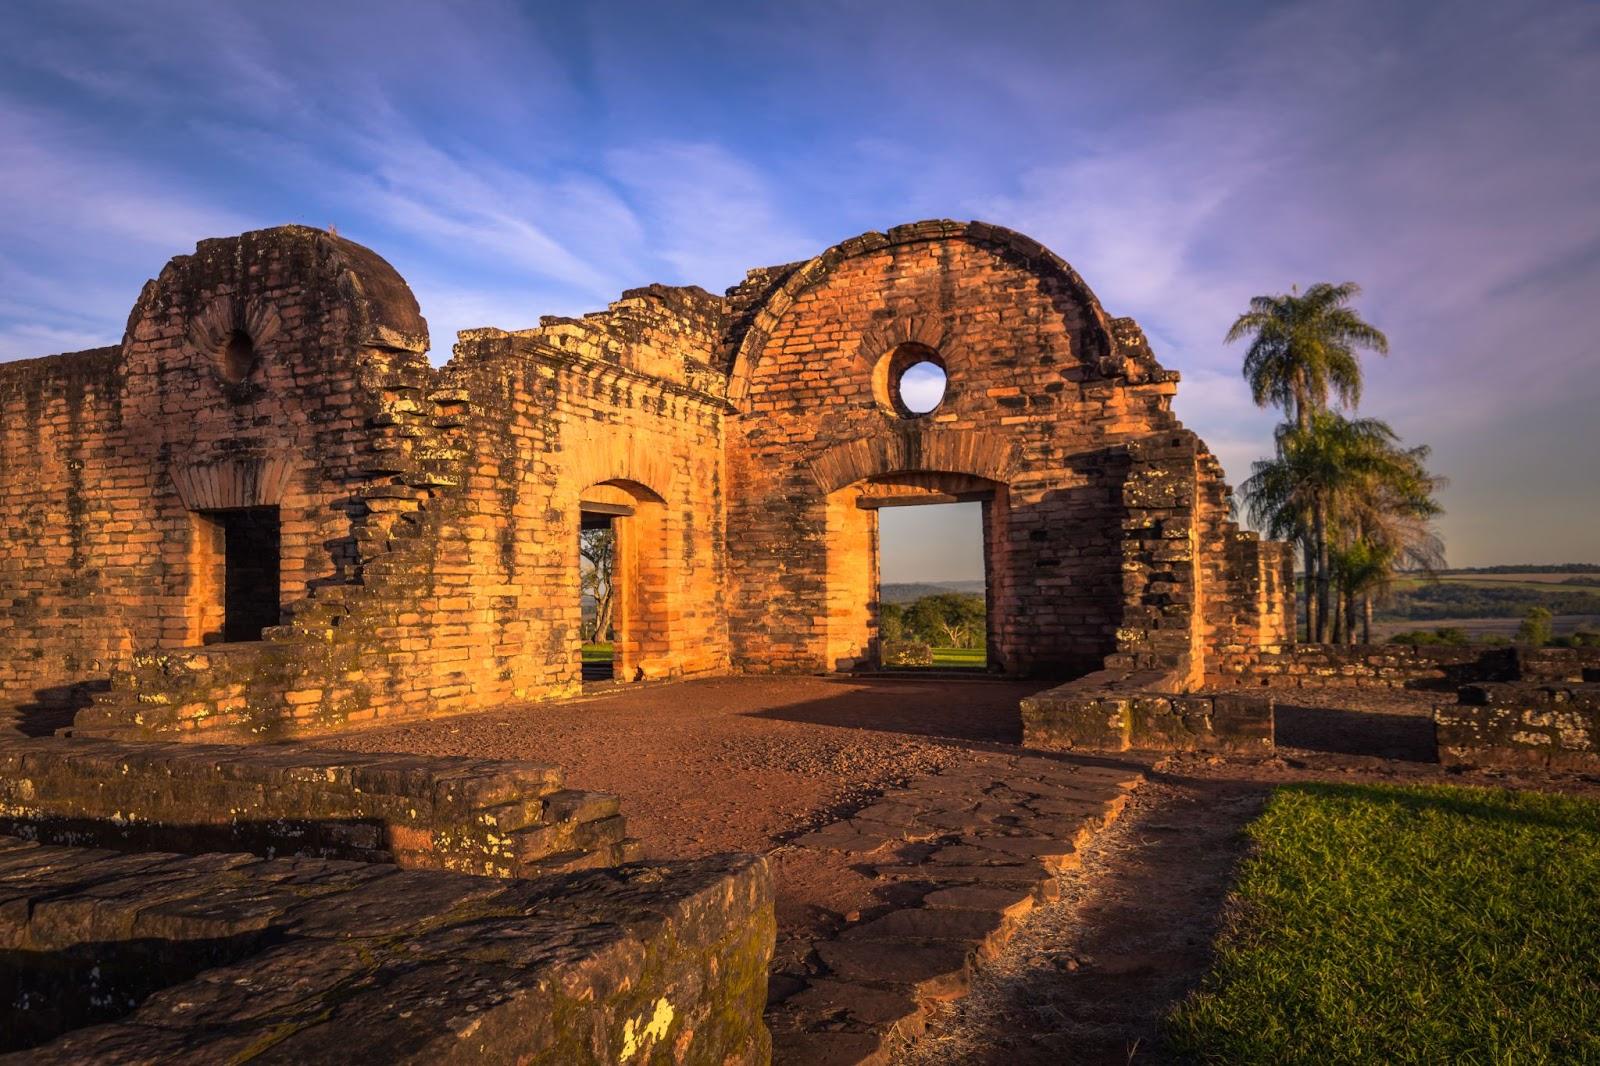 Inside the ancient Jesuit ruins of the Mission of Jesus de Tavarangue, Paraguay.